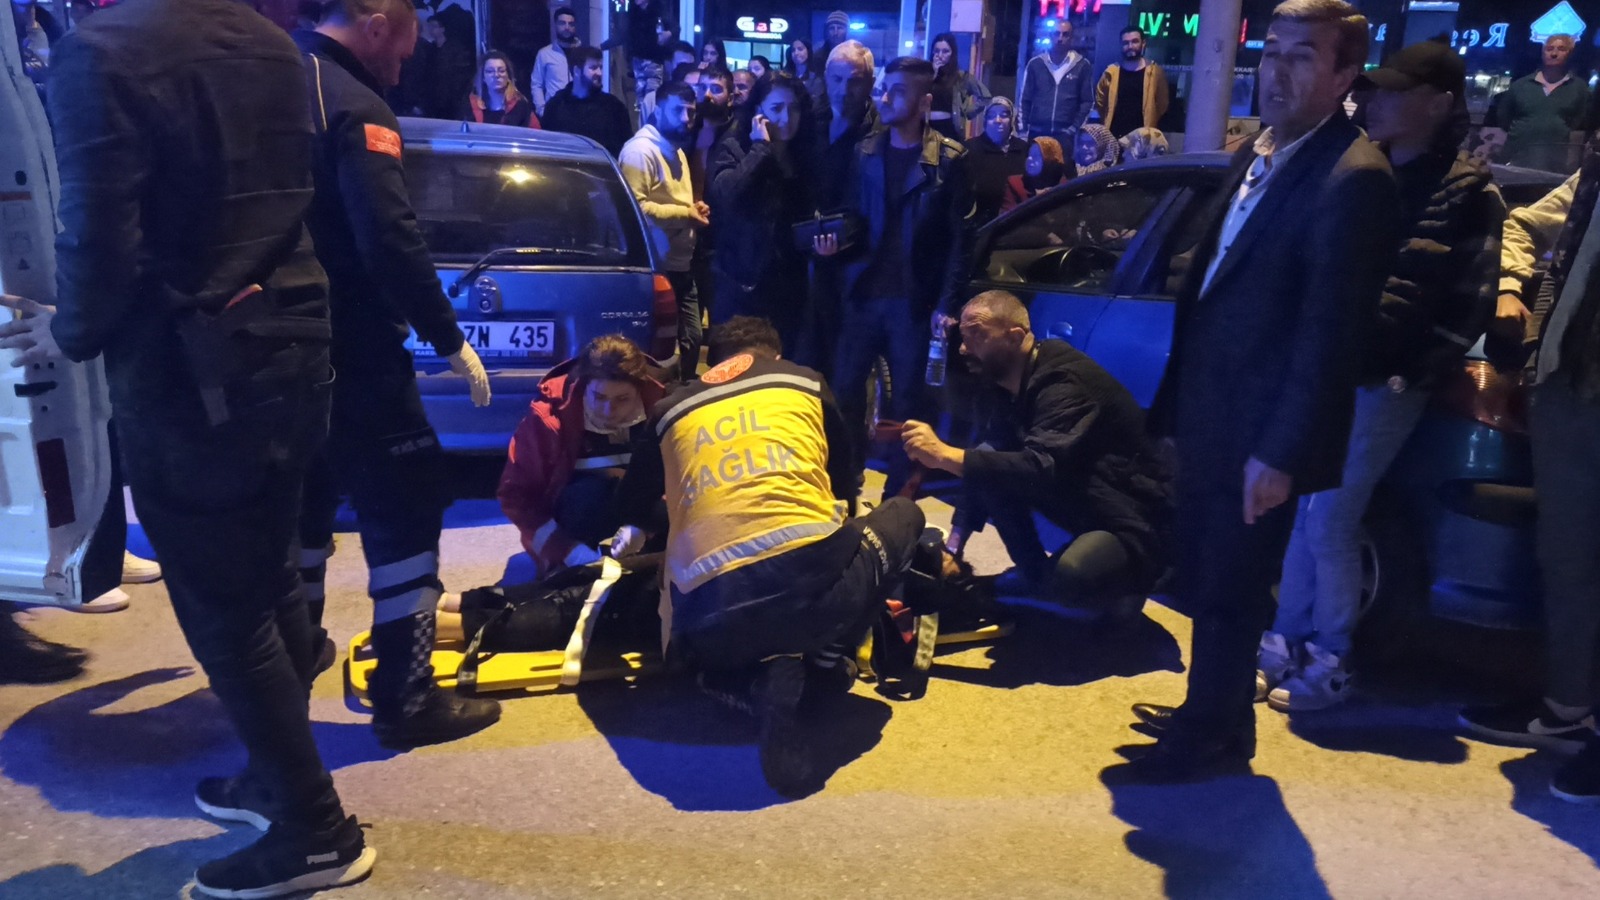 Seydişehir’ de trafik kazası 1 yaralı